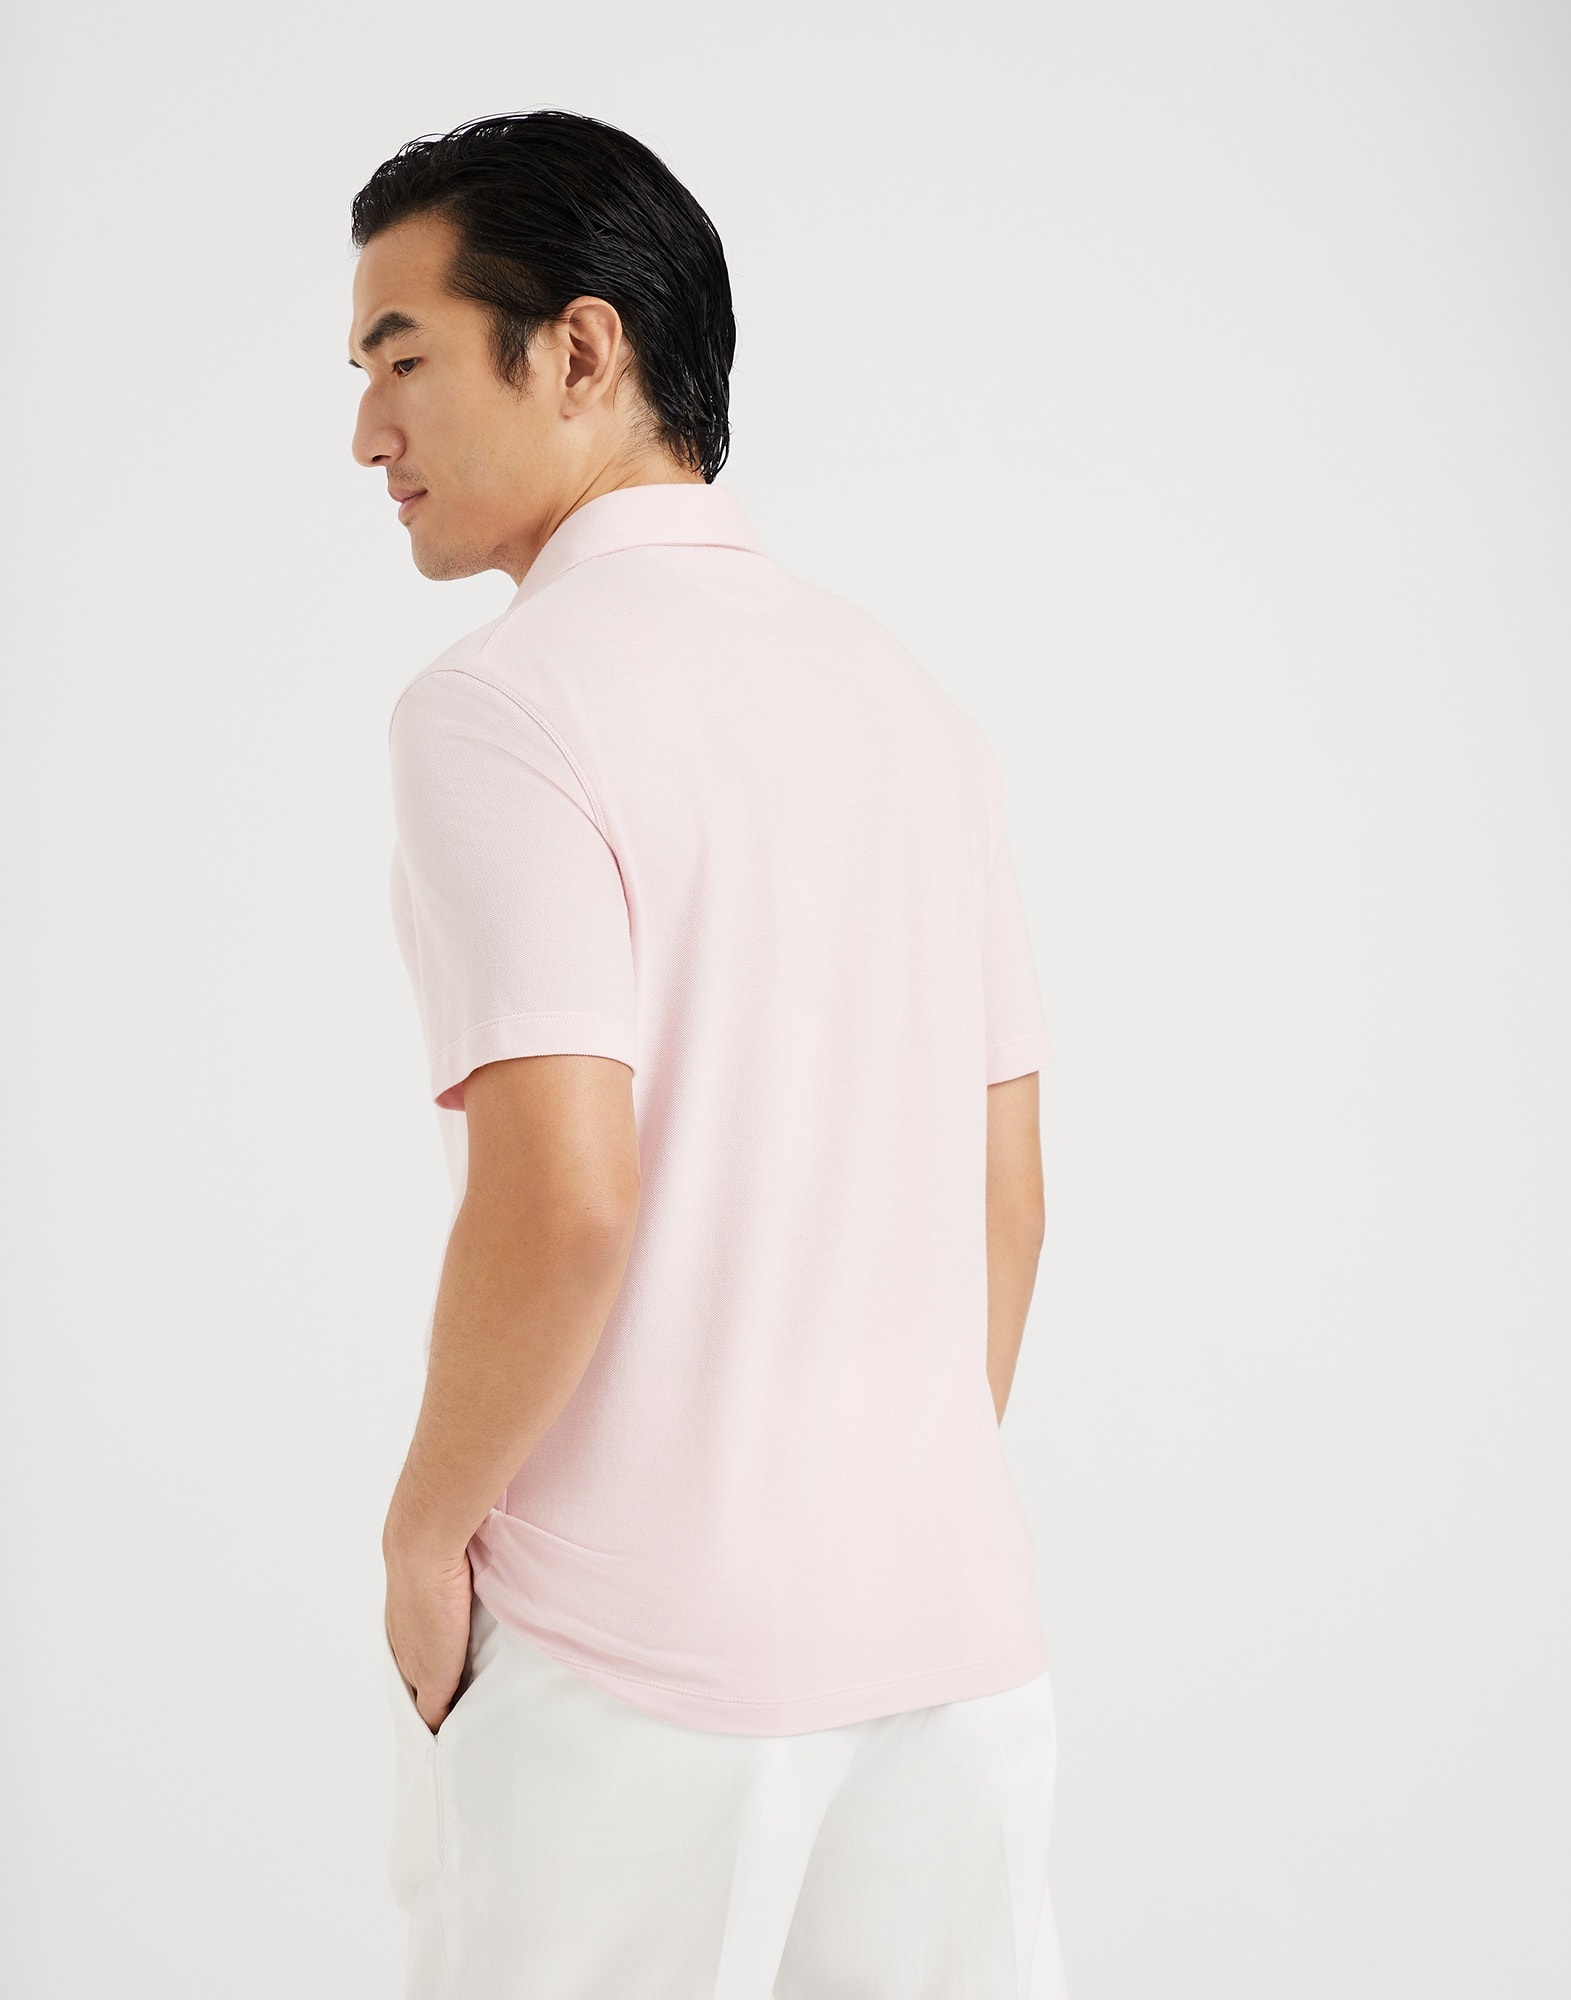 Cotton piqué shirt-style collar polo - 2